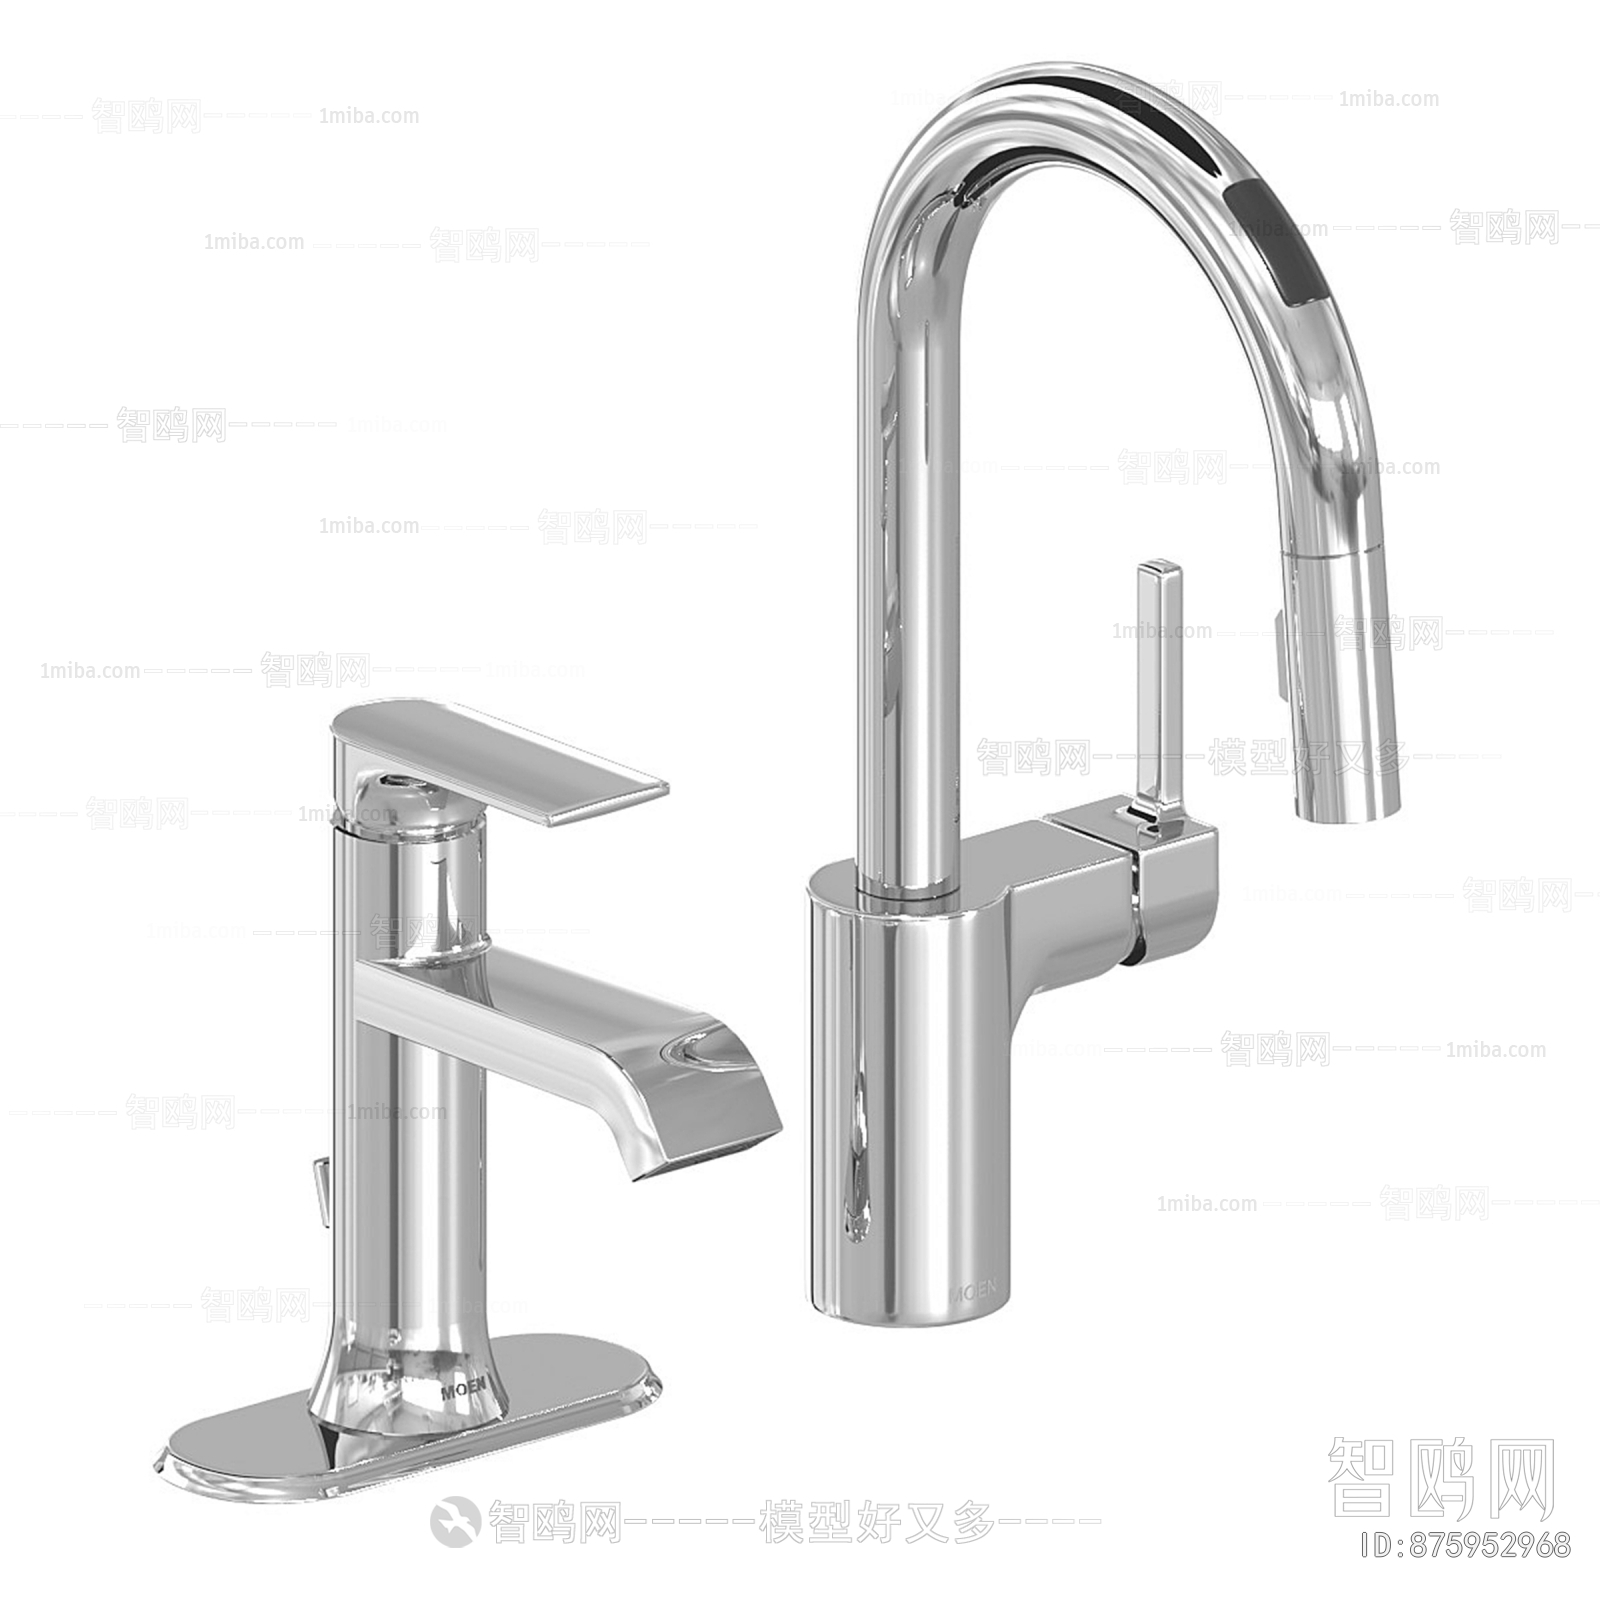 Modern Faucet/Shower